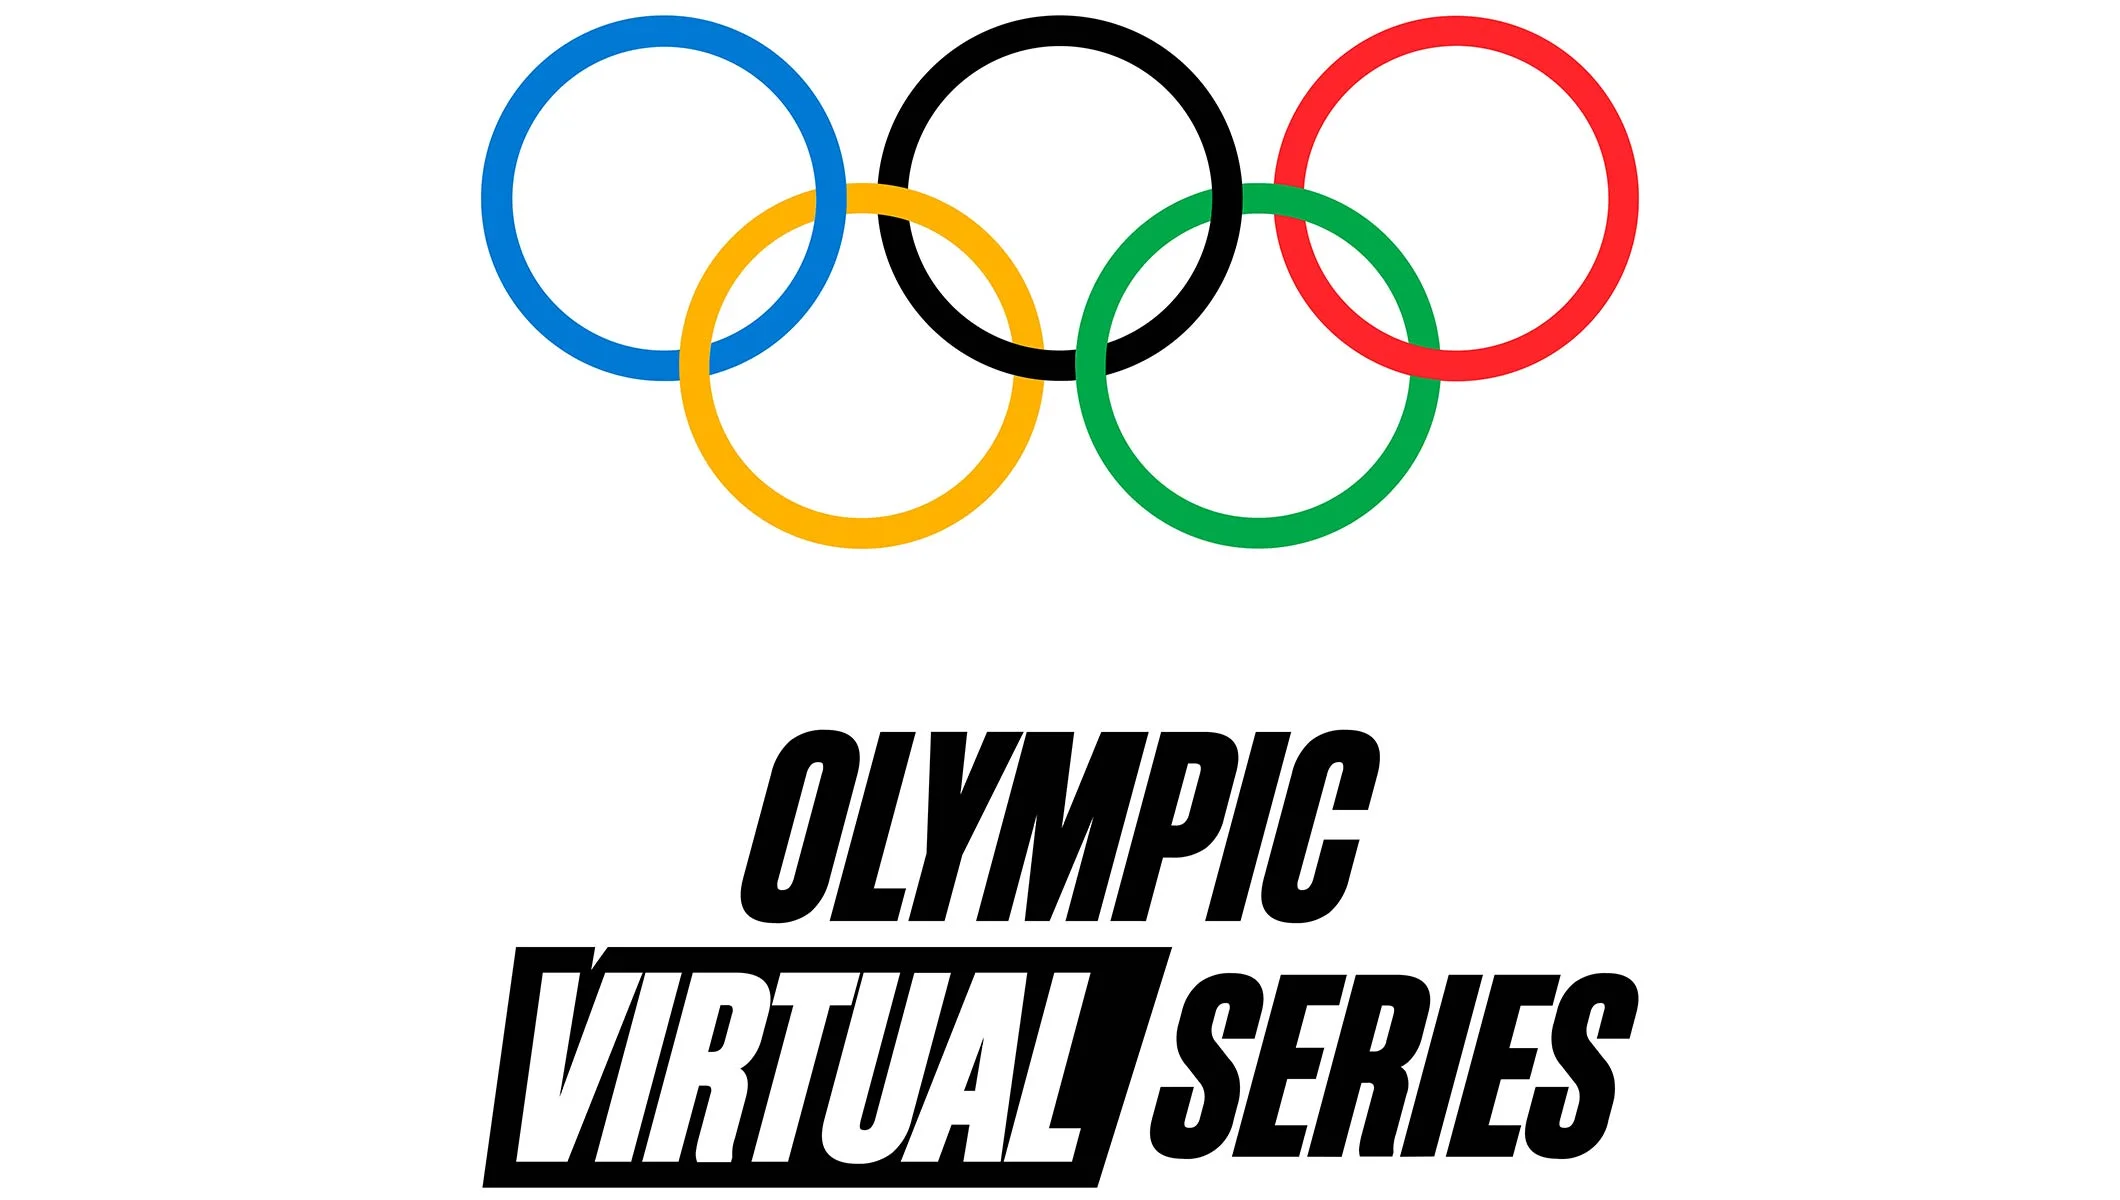 Международный олимпийский комитет объявил о создании Виртуальных Олимпийских Игр - изображение обложка